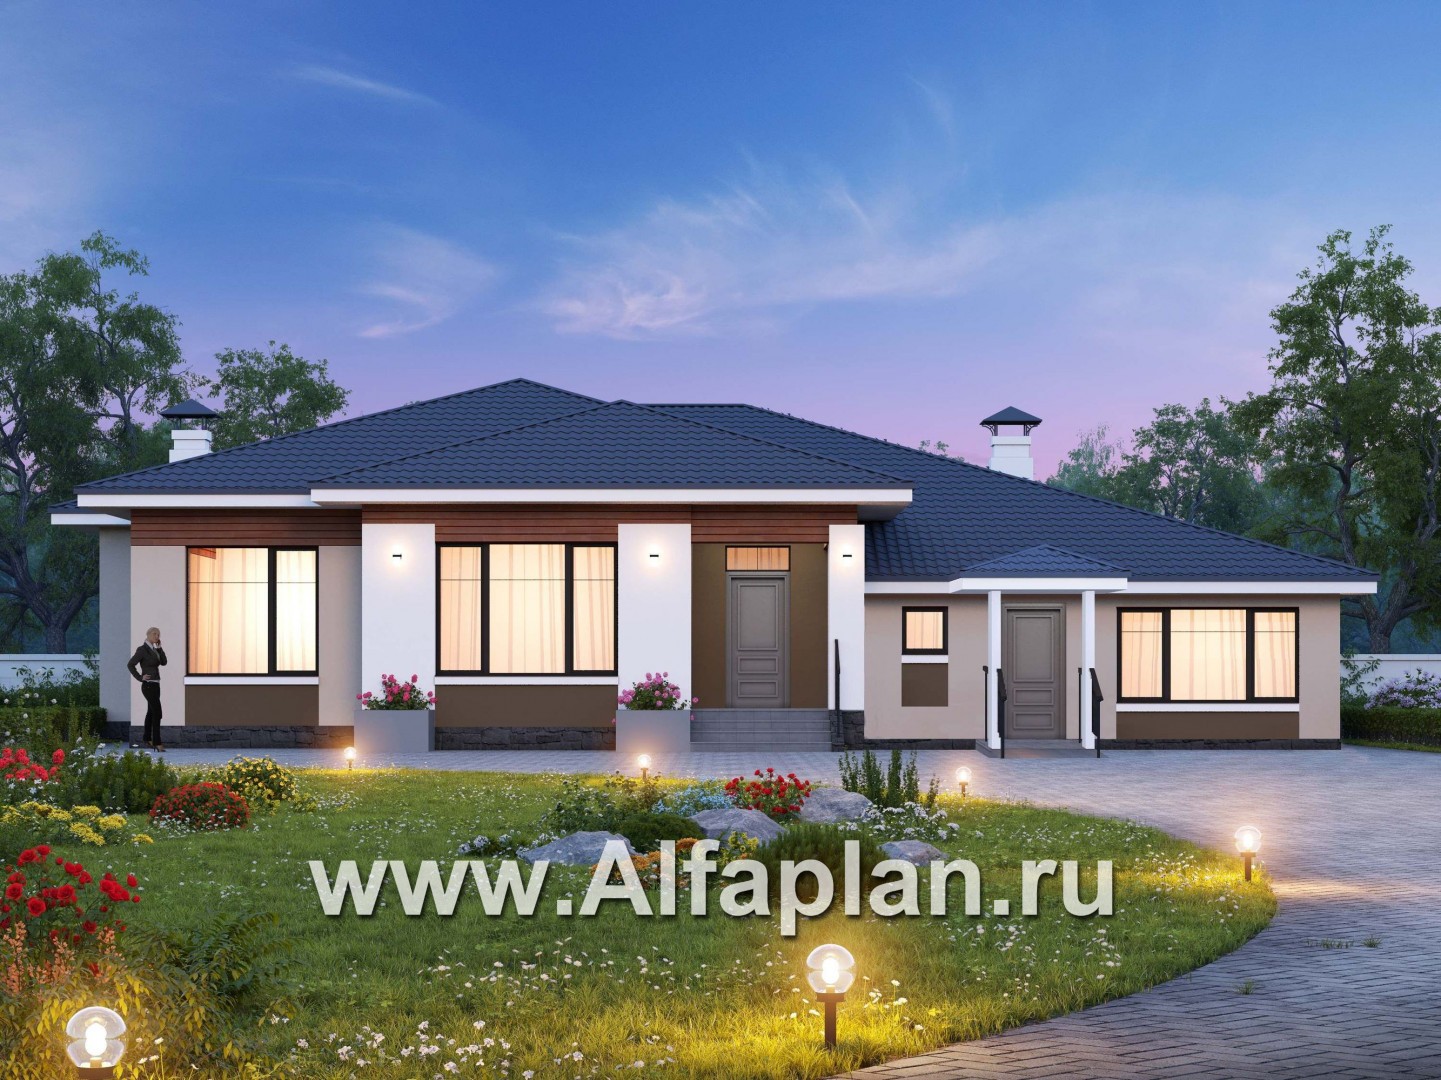 Проекты домов Альфаплан - «Калипсо» - одноэтажный двухквартирный дом (возможен для людей с ограниченными возможностями) - основное изображение